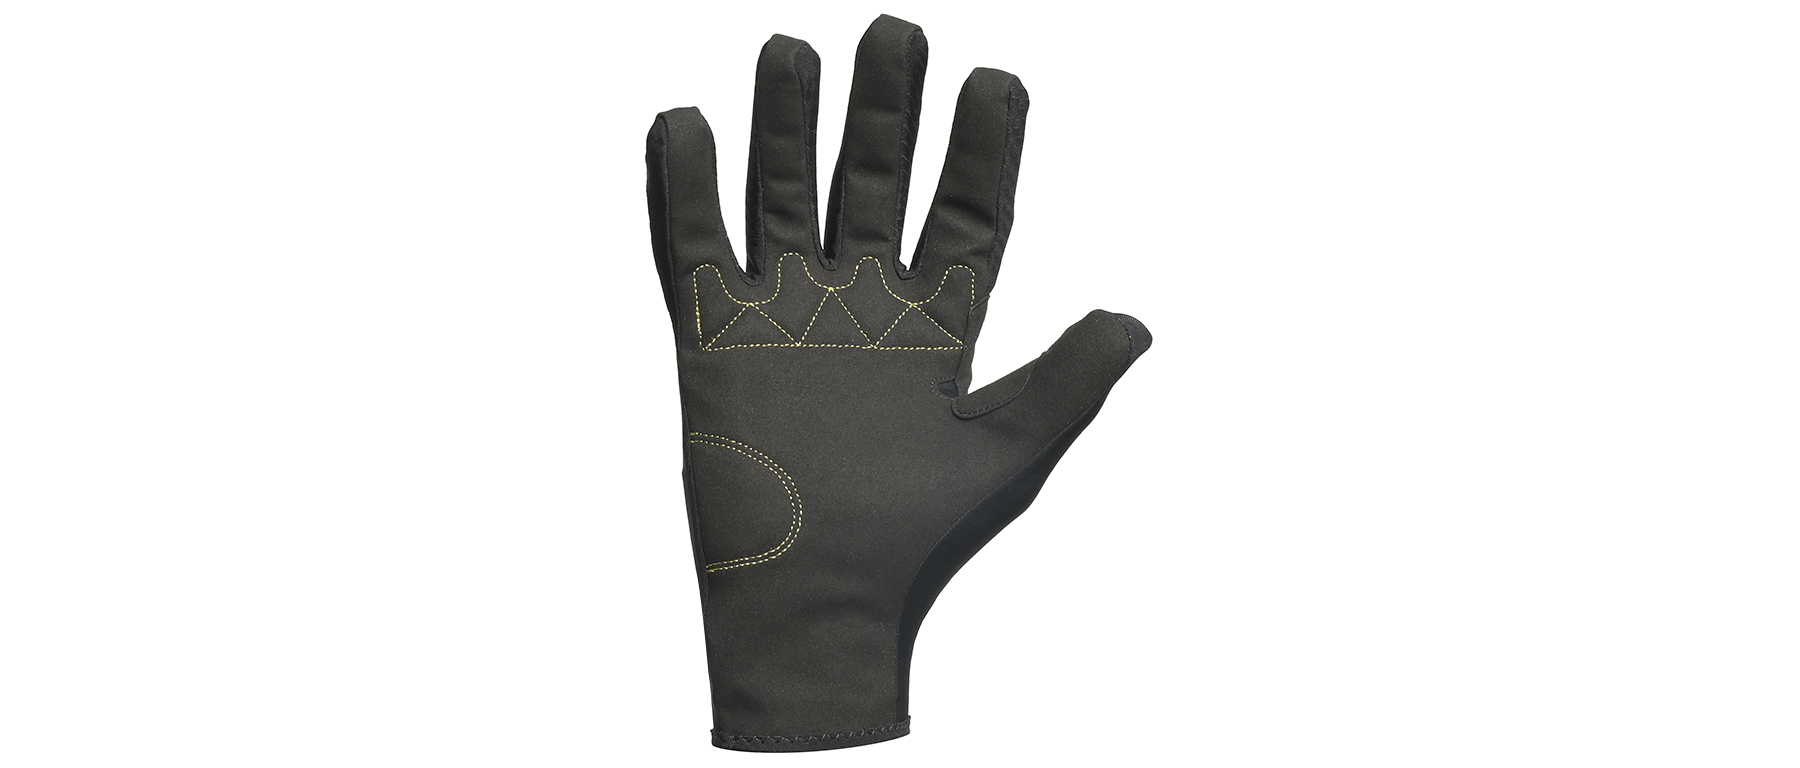 Assos Spring Fall EVO Gloves